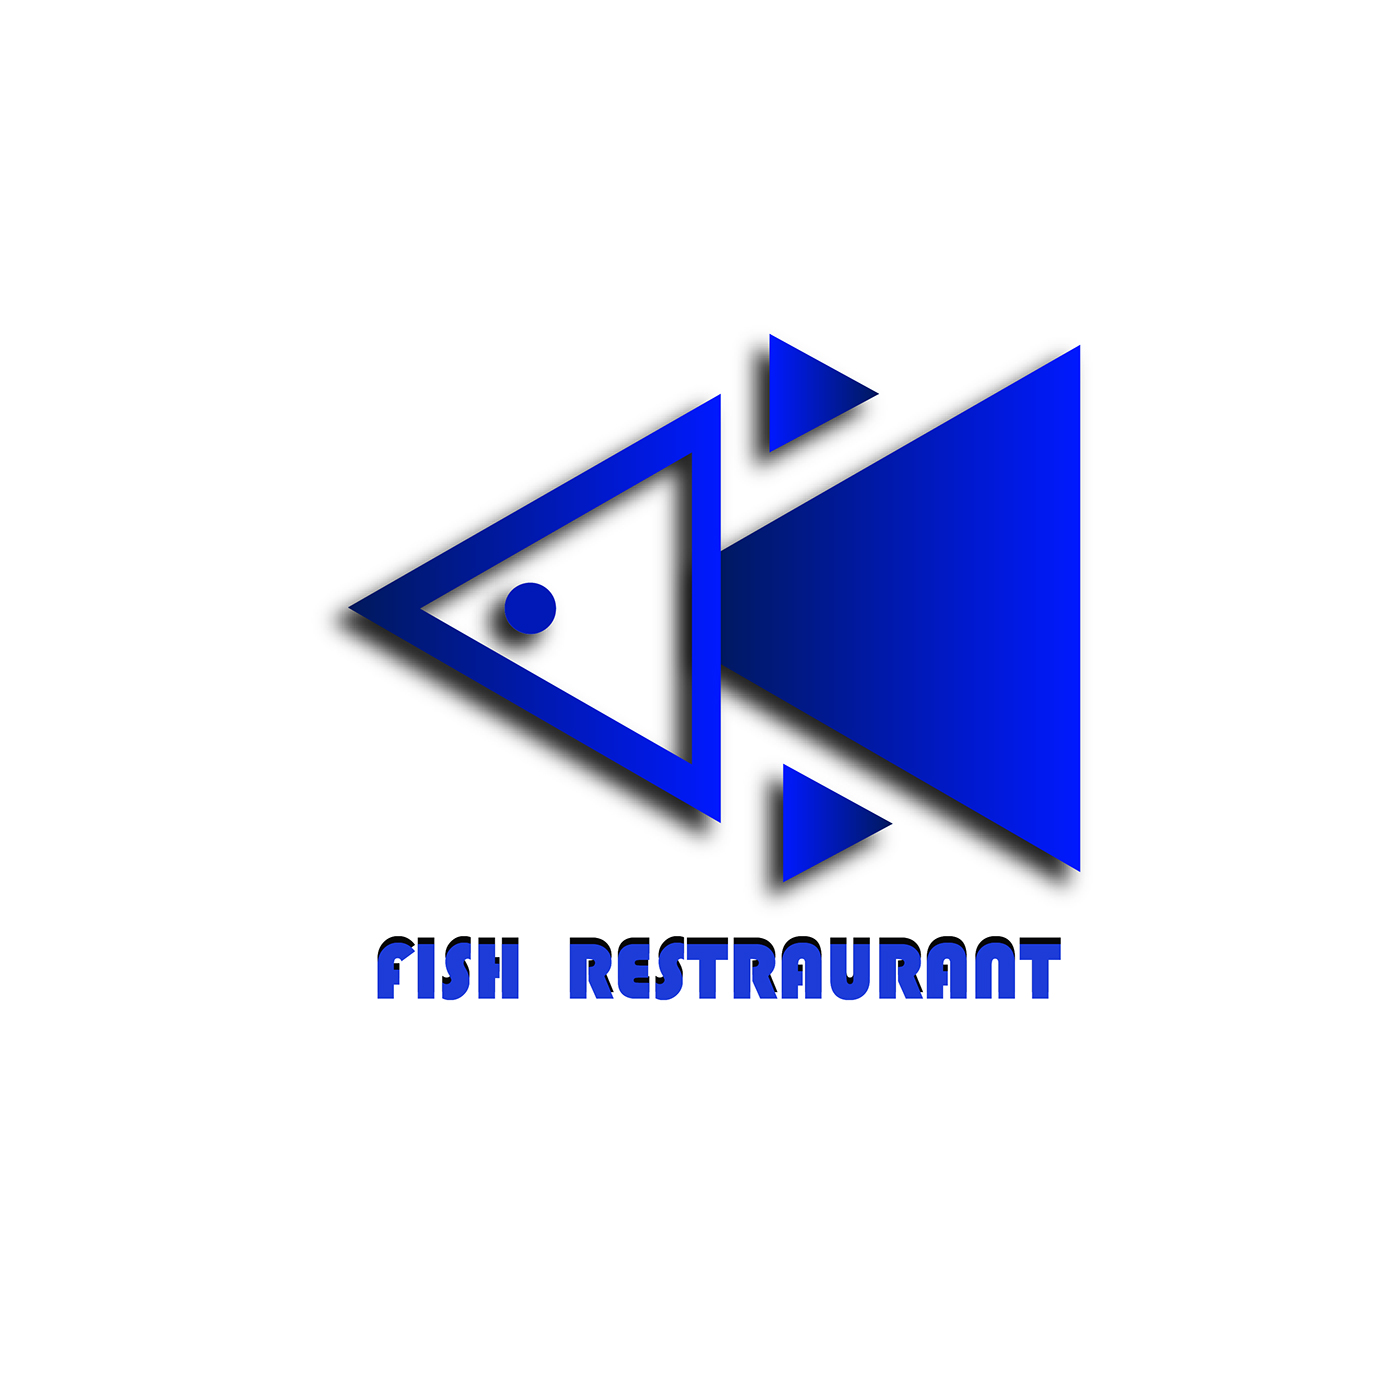 Mewa fish branding RESTRAUNAT BRANDING FISH MEWA